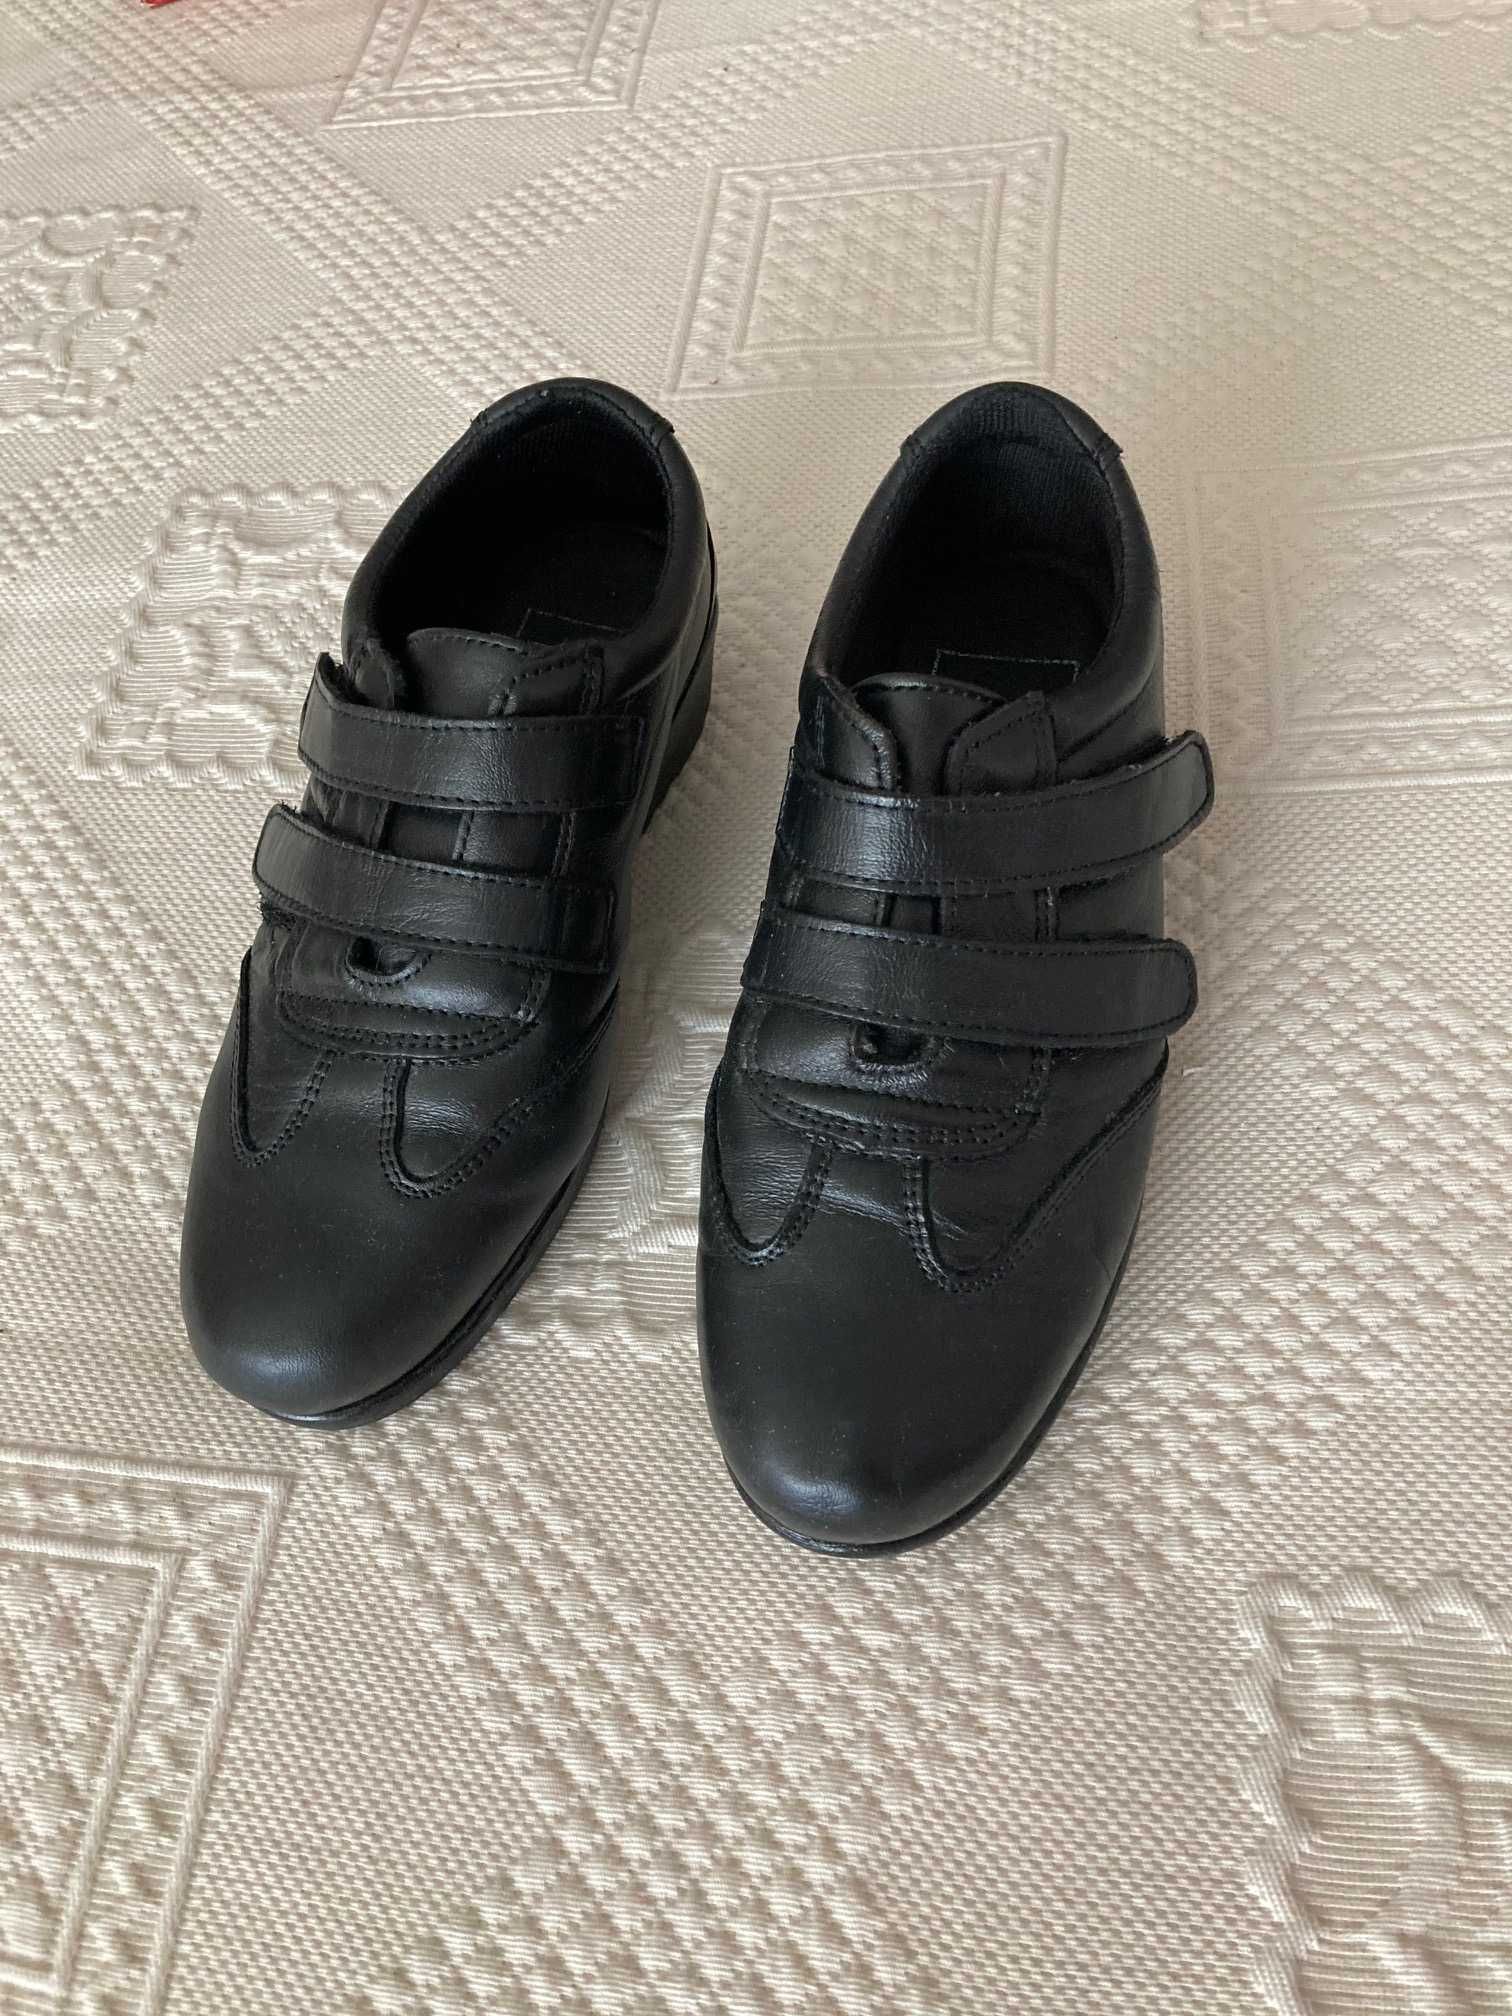 Sapatos/ténis cunha pretos (36) praticamente sem uso